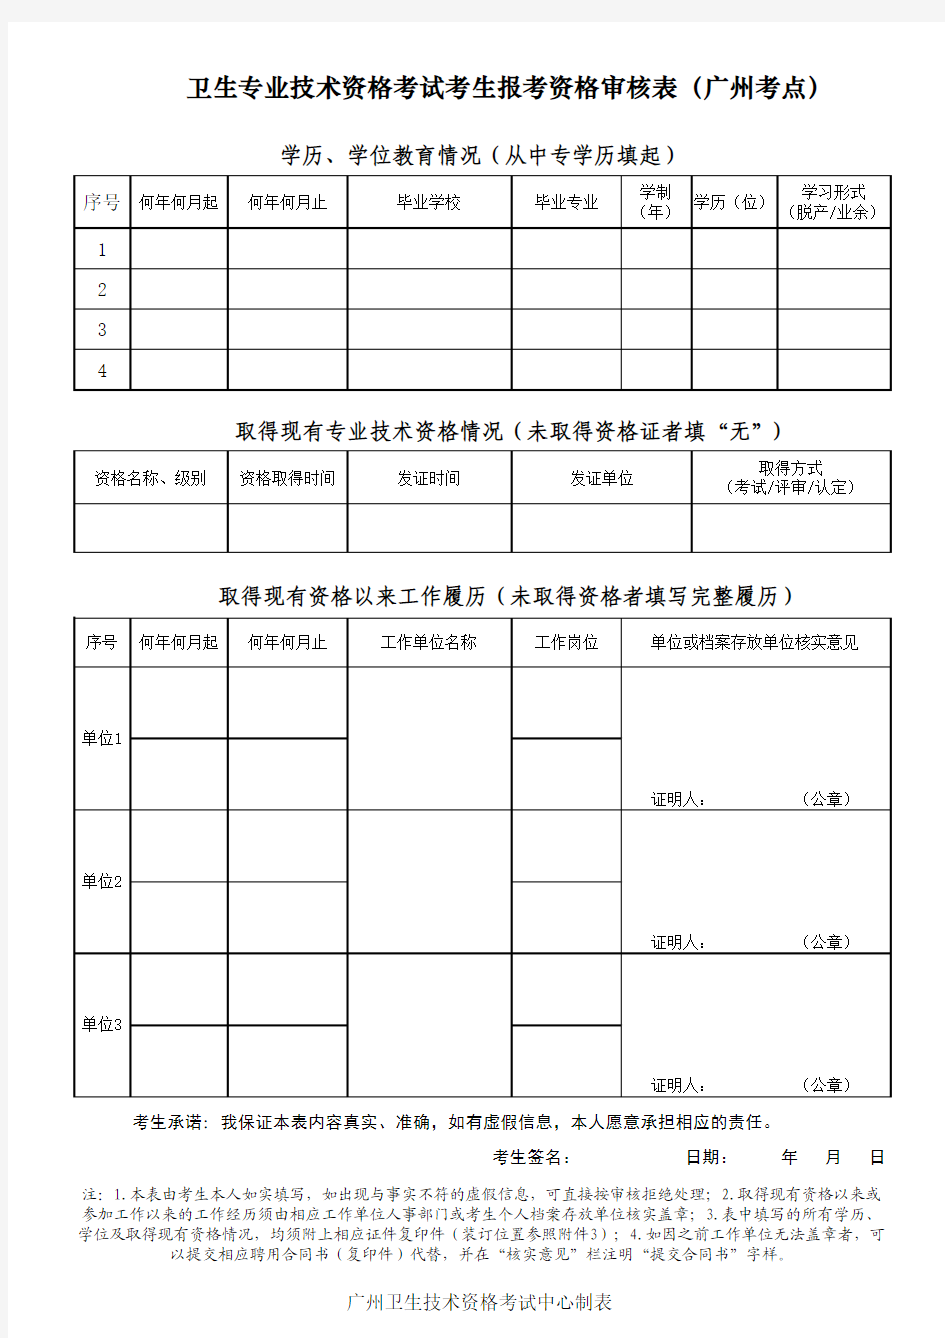 《卫生专业技术资格考试考生报考资格审核表(广州考点)》